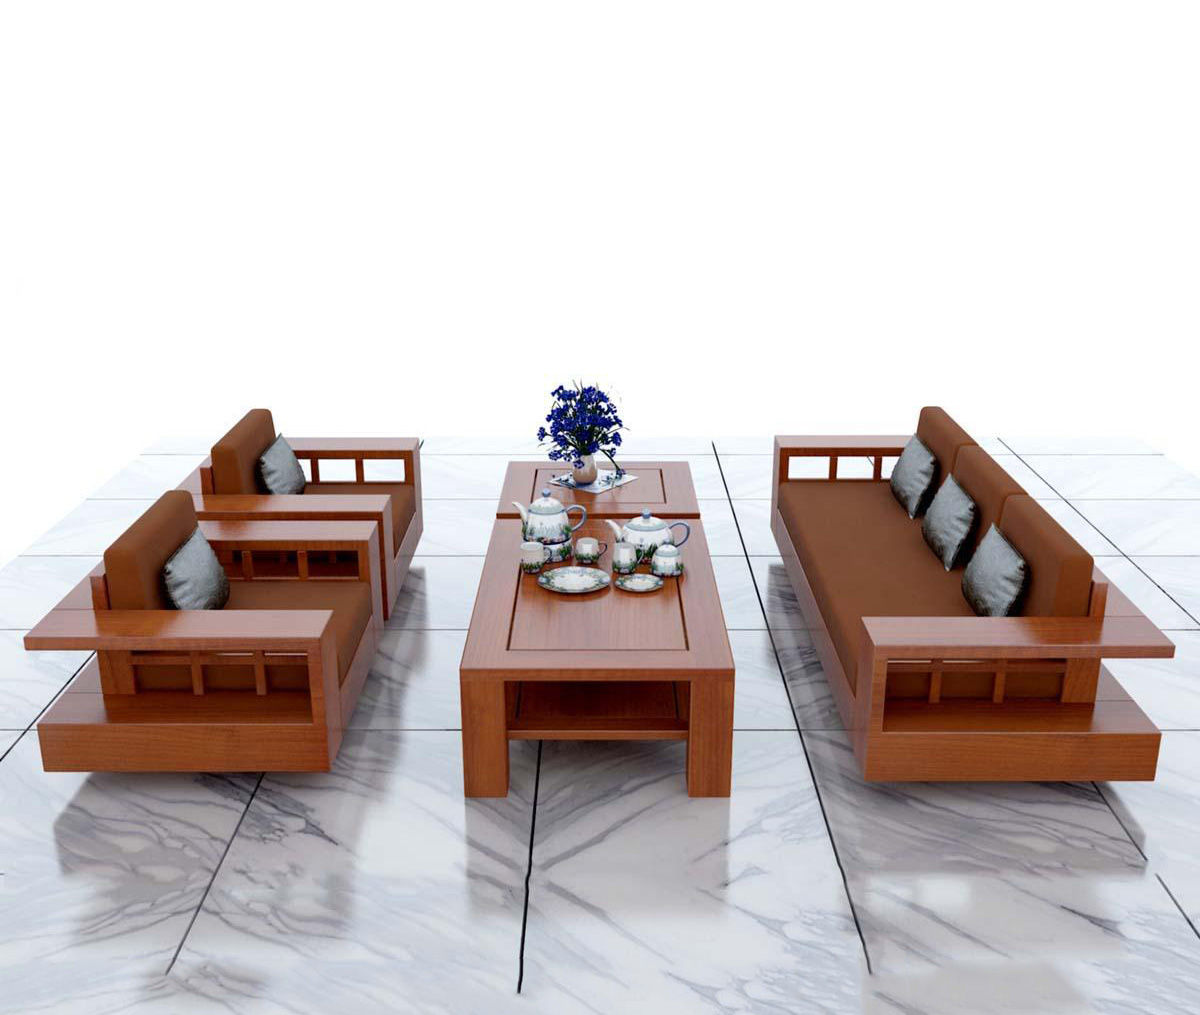 Bàn ghế gỗ phòng khách là sự kết hợp hoàn hảo giữa nét đẹp truyền thống và hiện đại. Với chất liệu gỗ tự nhiên, các sản phẩm này mang đến sự ấm áp, tinh tế và sang trọng cho không gian nội thất. Hãy đến và xem qua hình ảnh để tìm kiếm sản phẩm phù hợp với sở thích và phong cách trang trí của bạn.